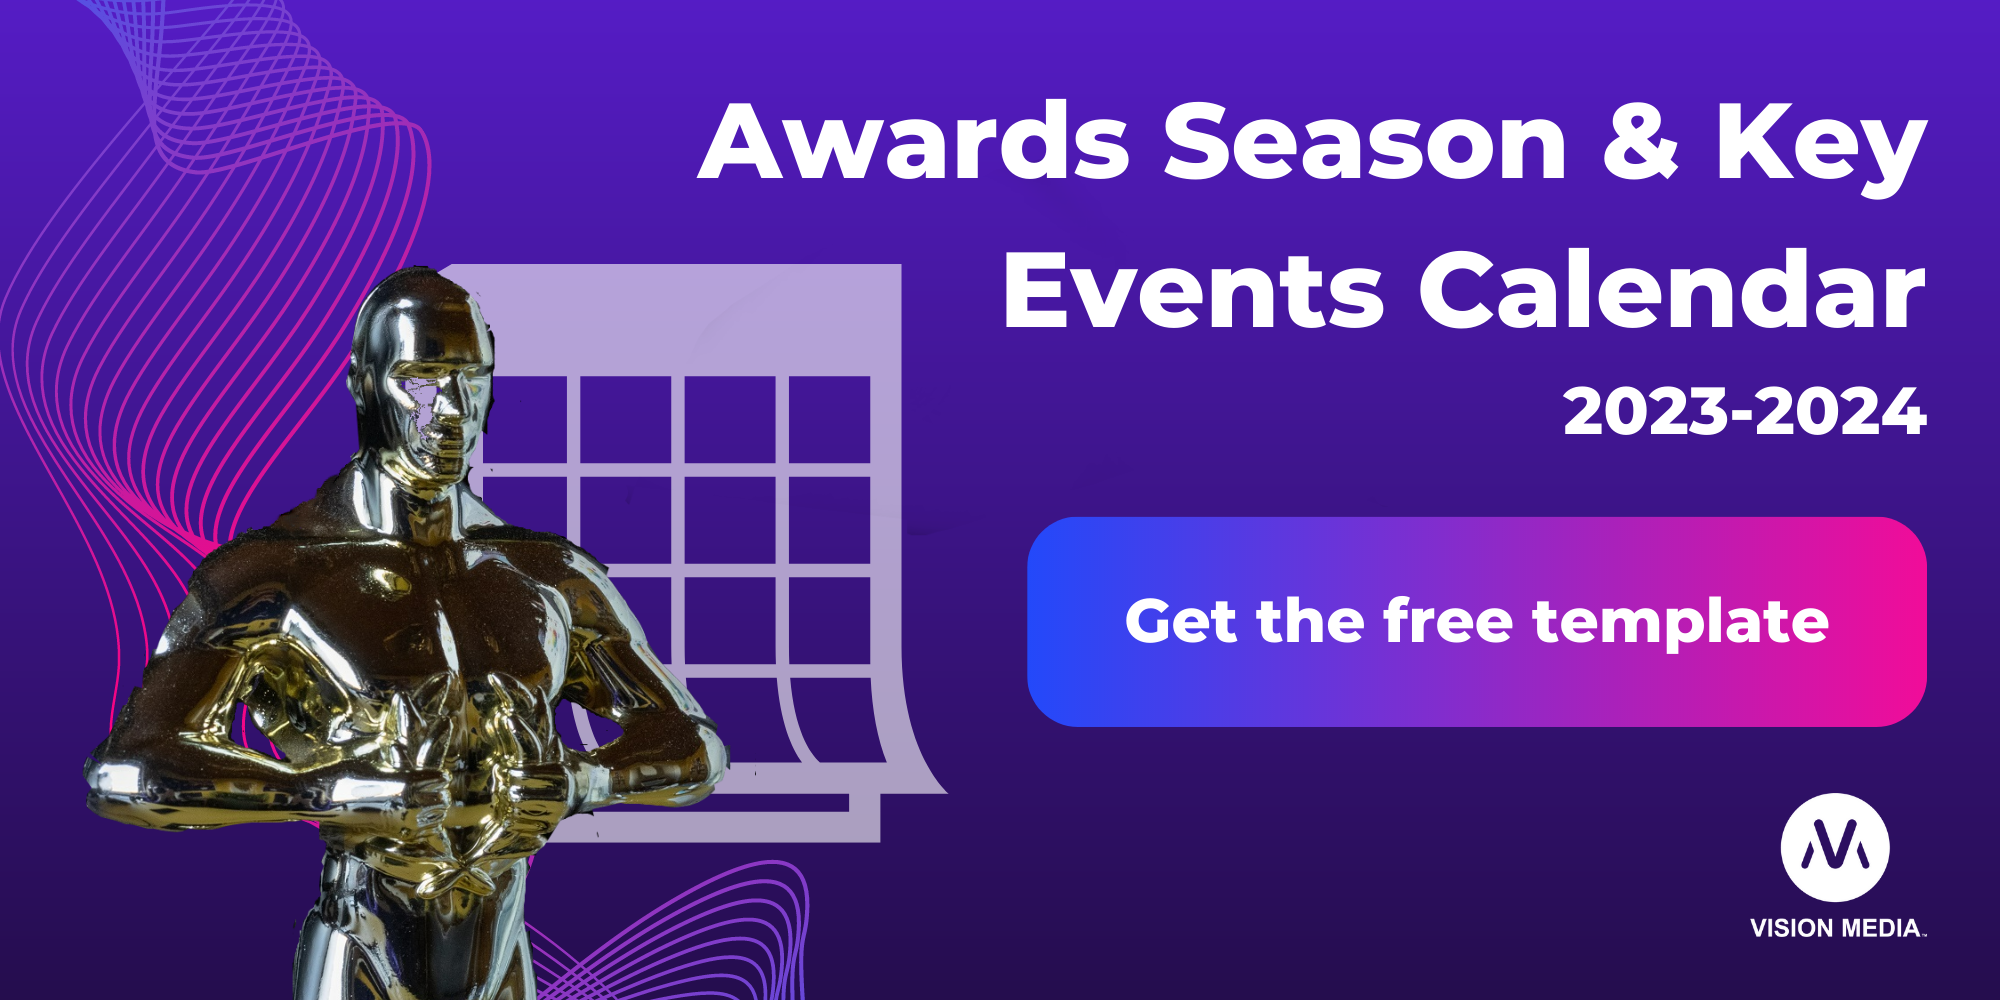 Awards Calendar 20232024 key awards dates and free calendar template